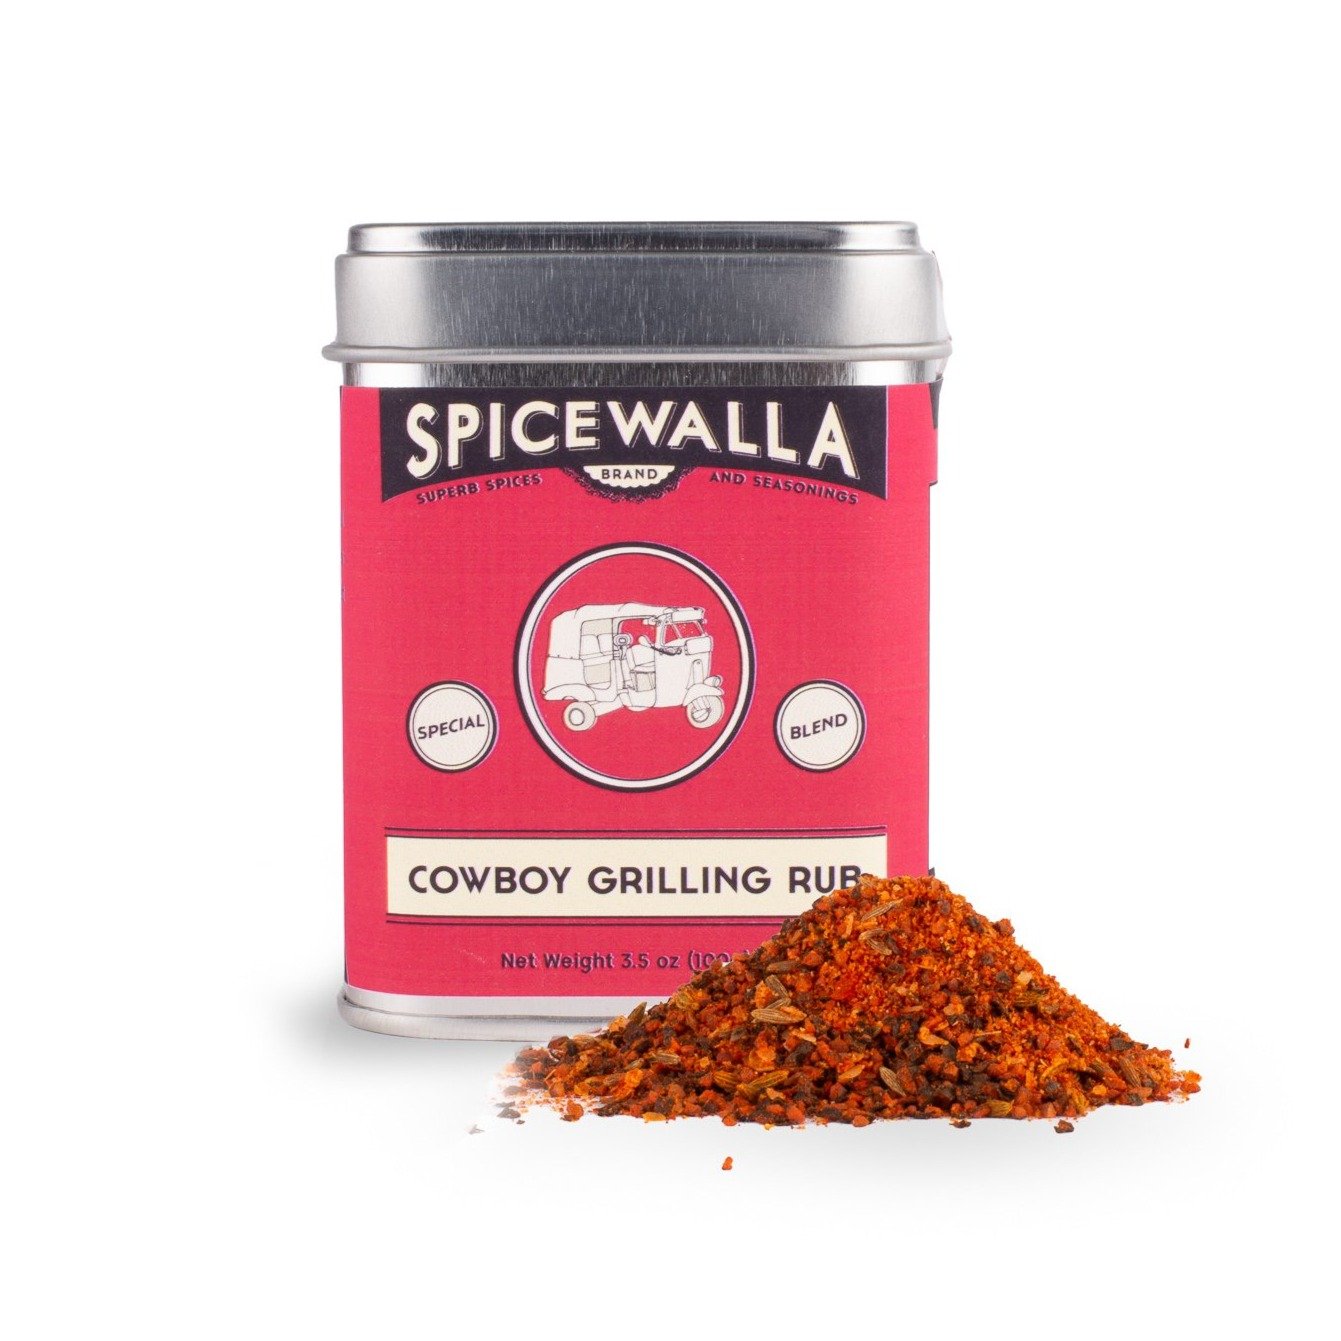 Spicewalla Cowboy Grilling Rub